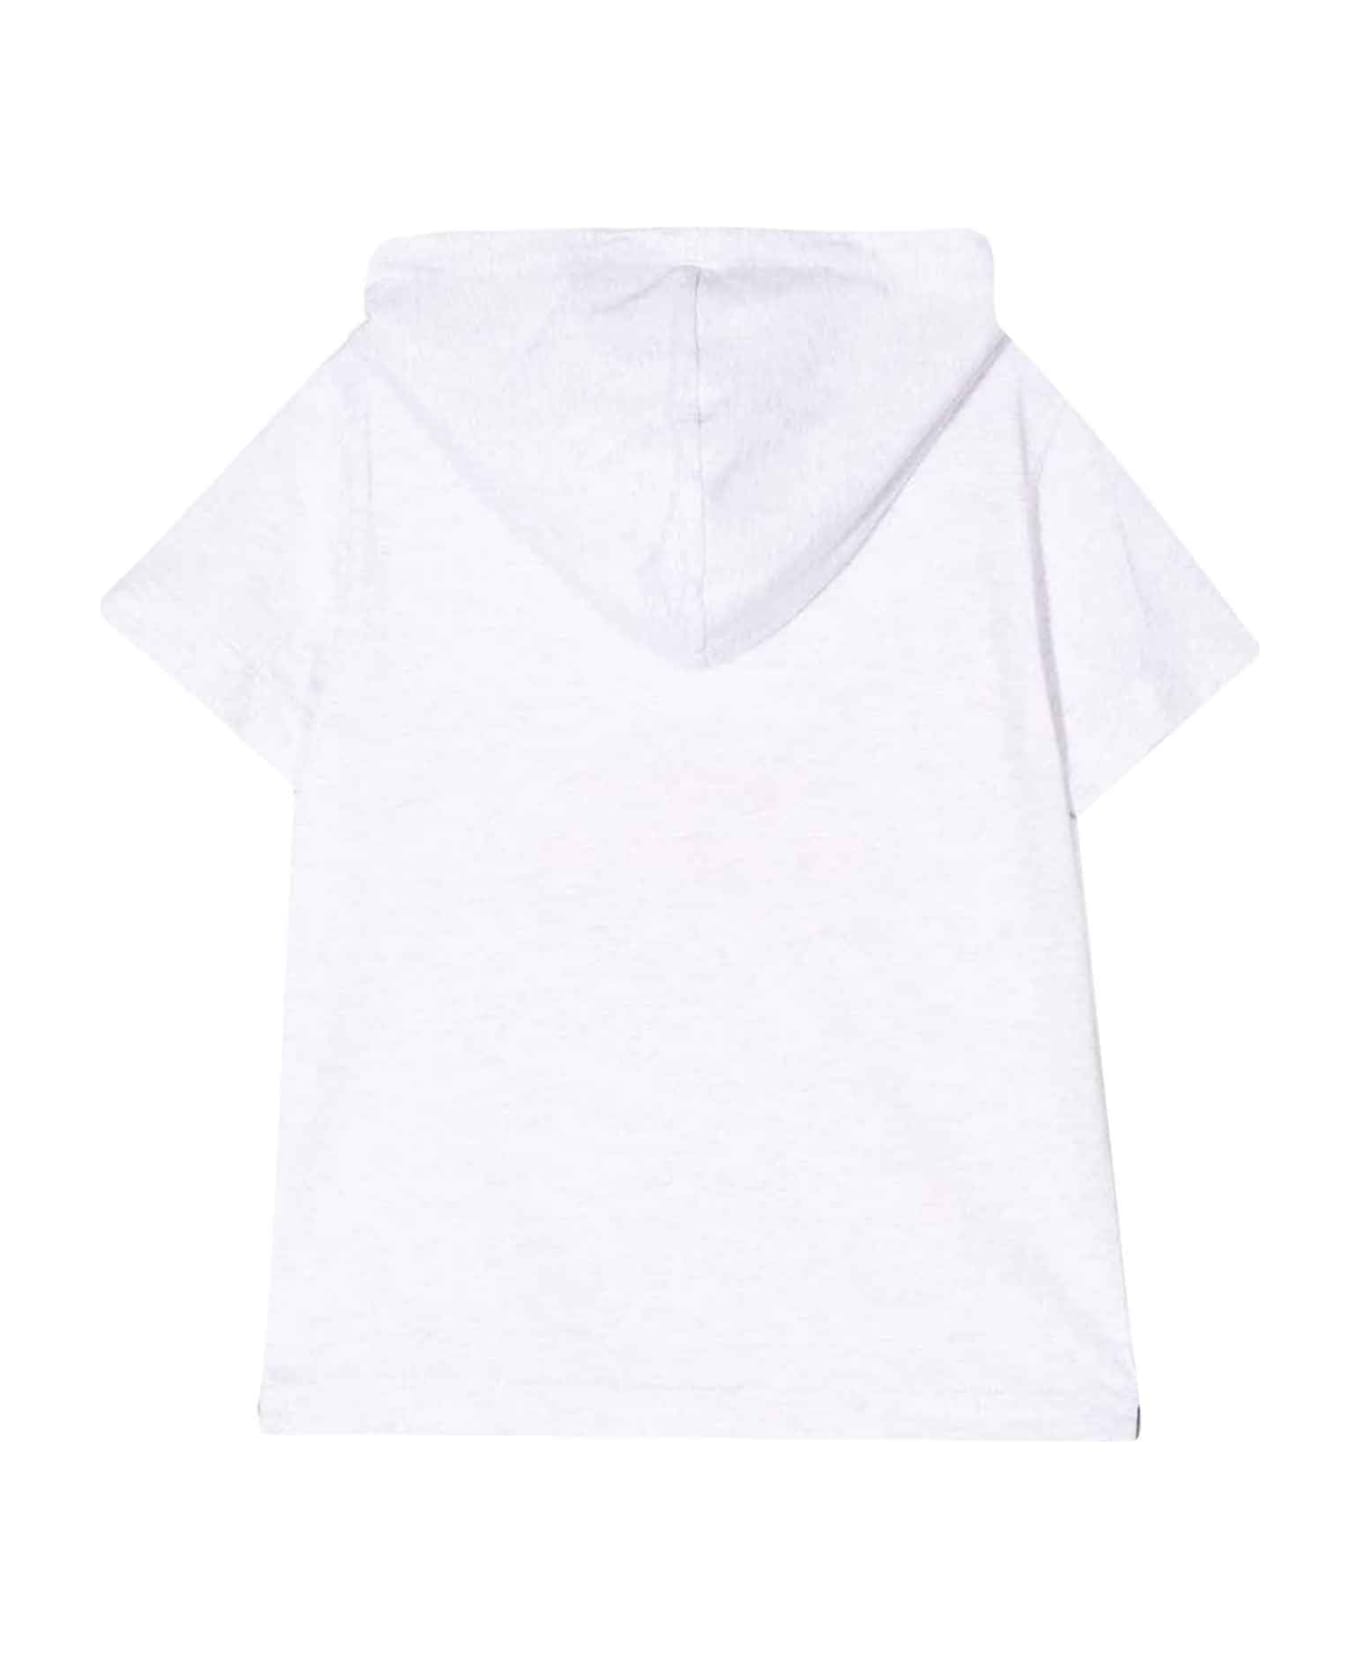 Brunello Cucinelli White T-shirt Boy - Bianco